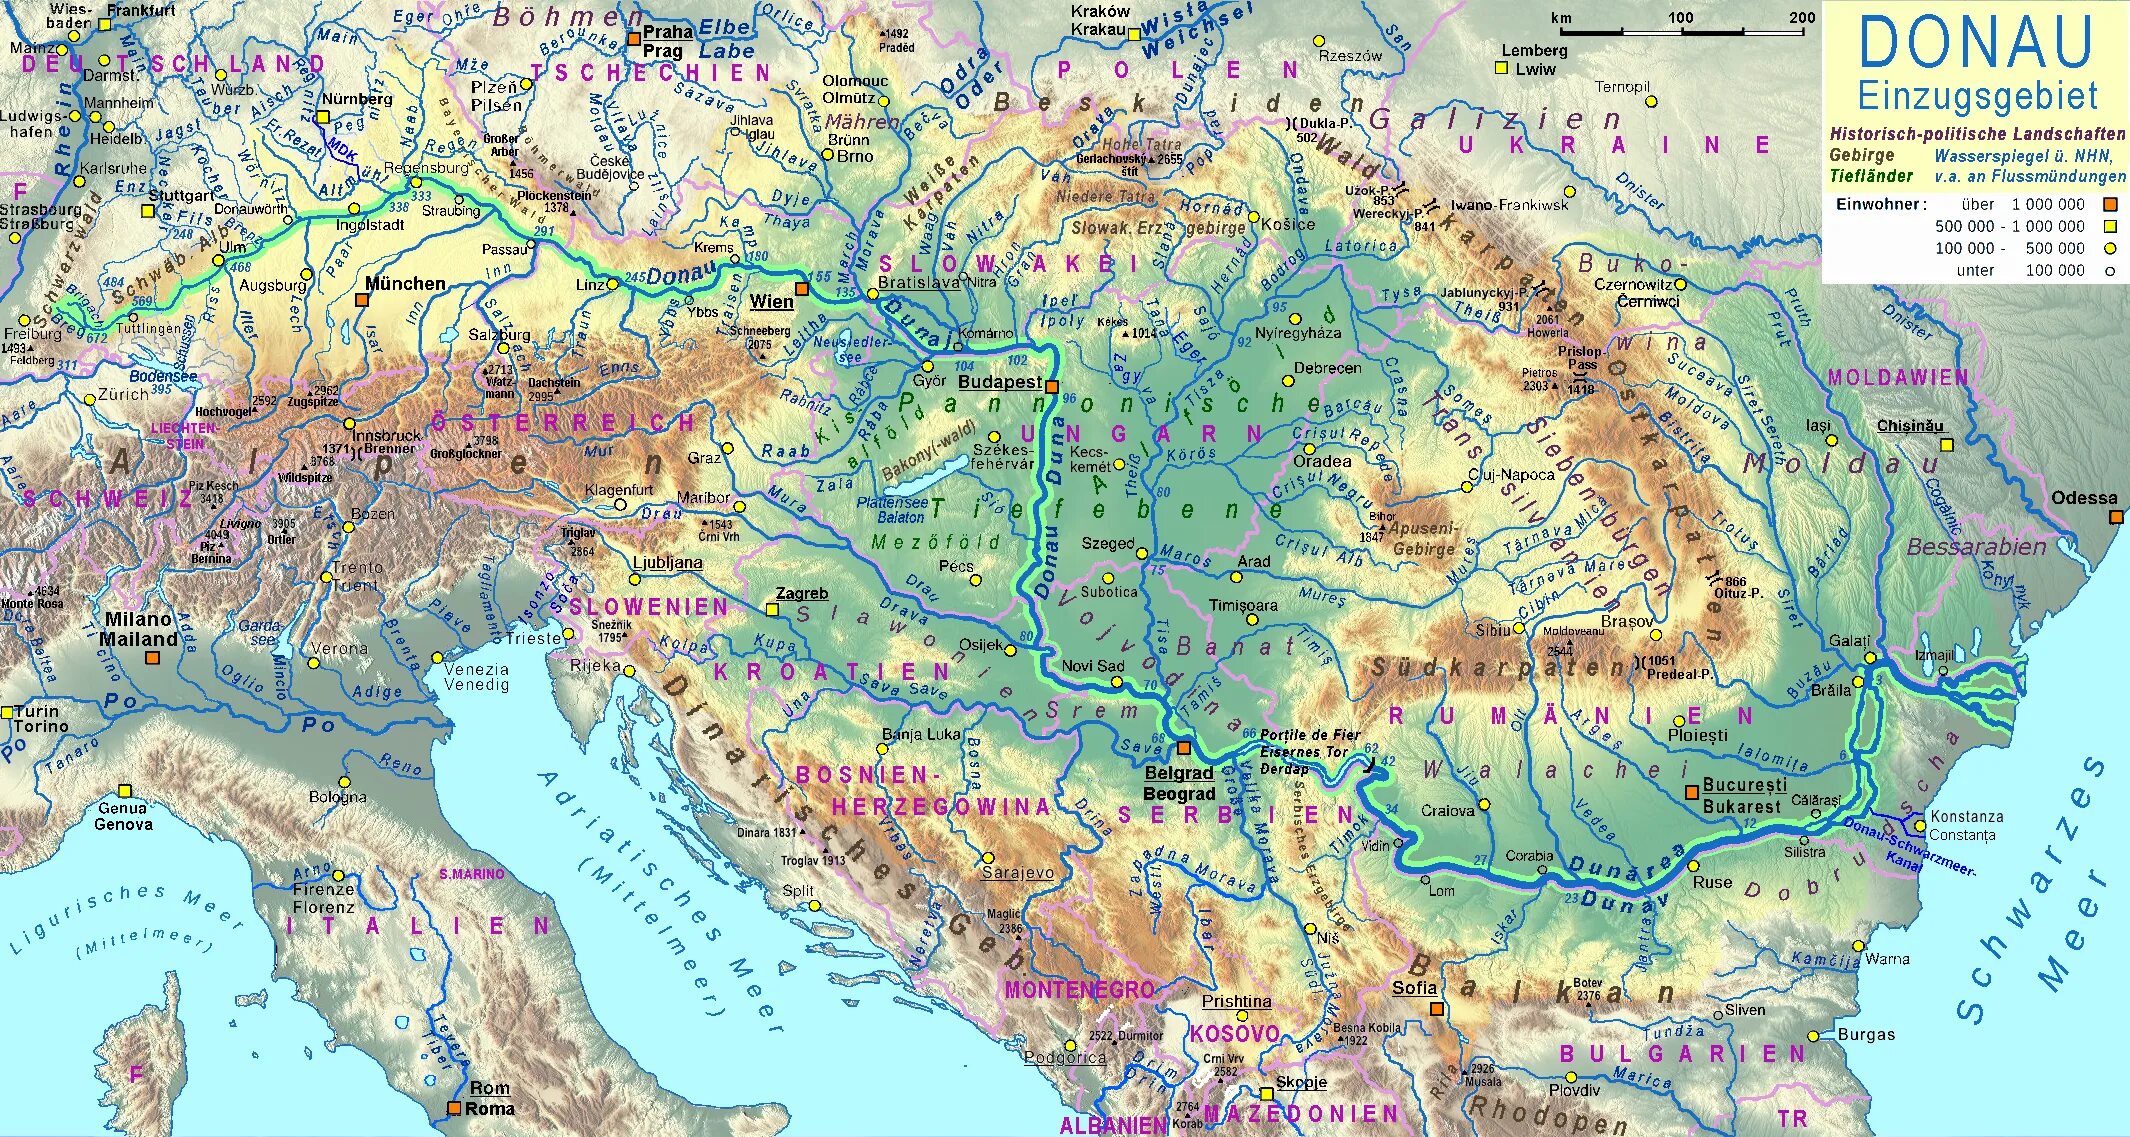 Реки находящиеся в евразии. Бассейн реки Дунай. Исток реки Дунай на карте. Река Дунай на карте. Река Дунай на карте Европы.